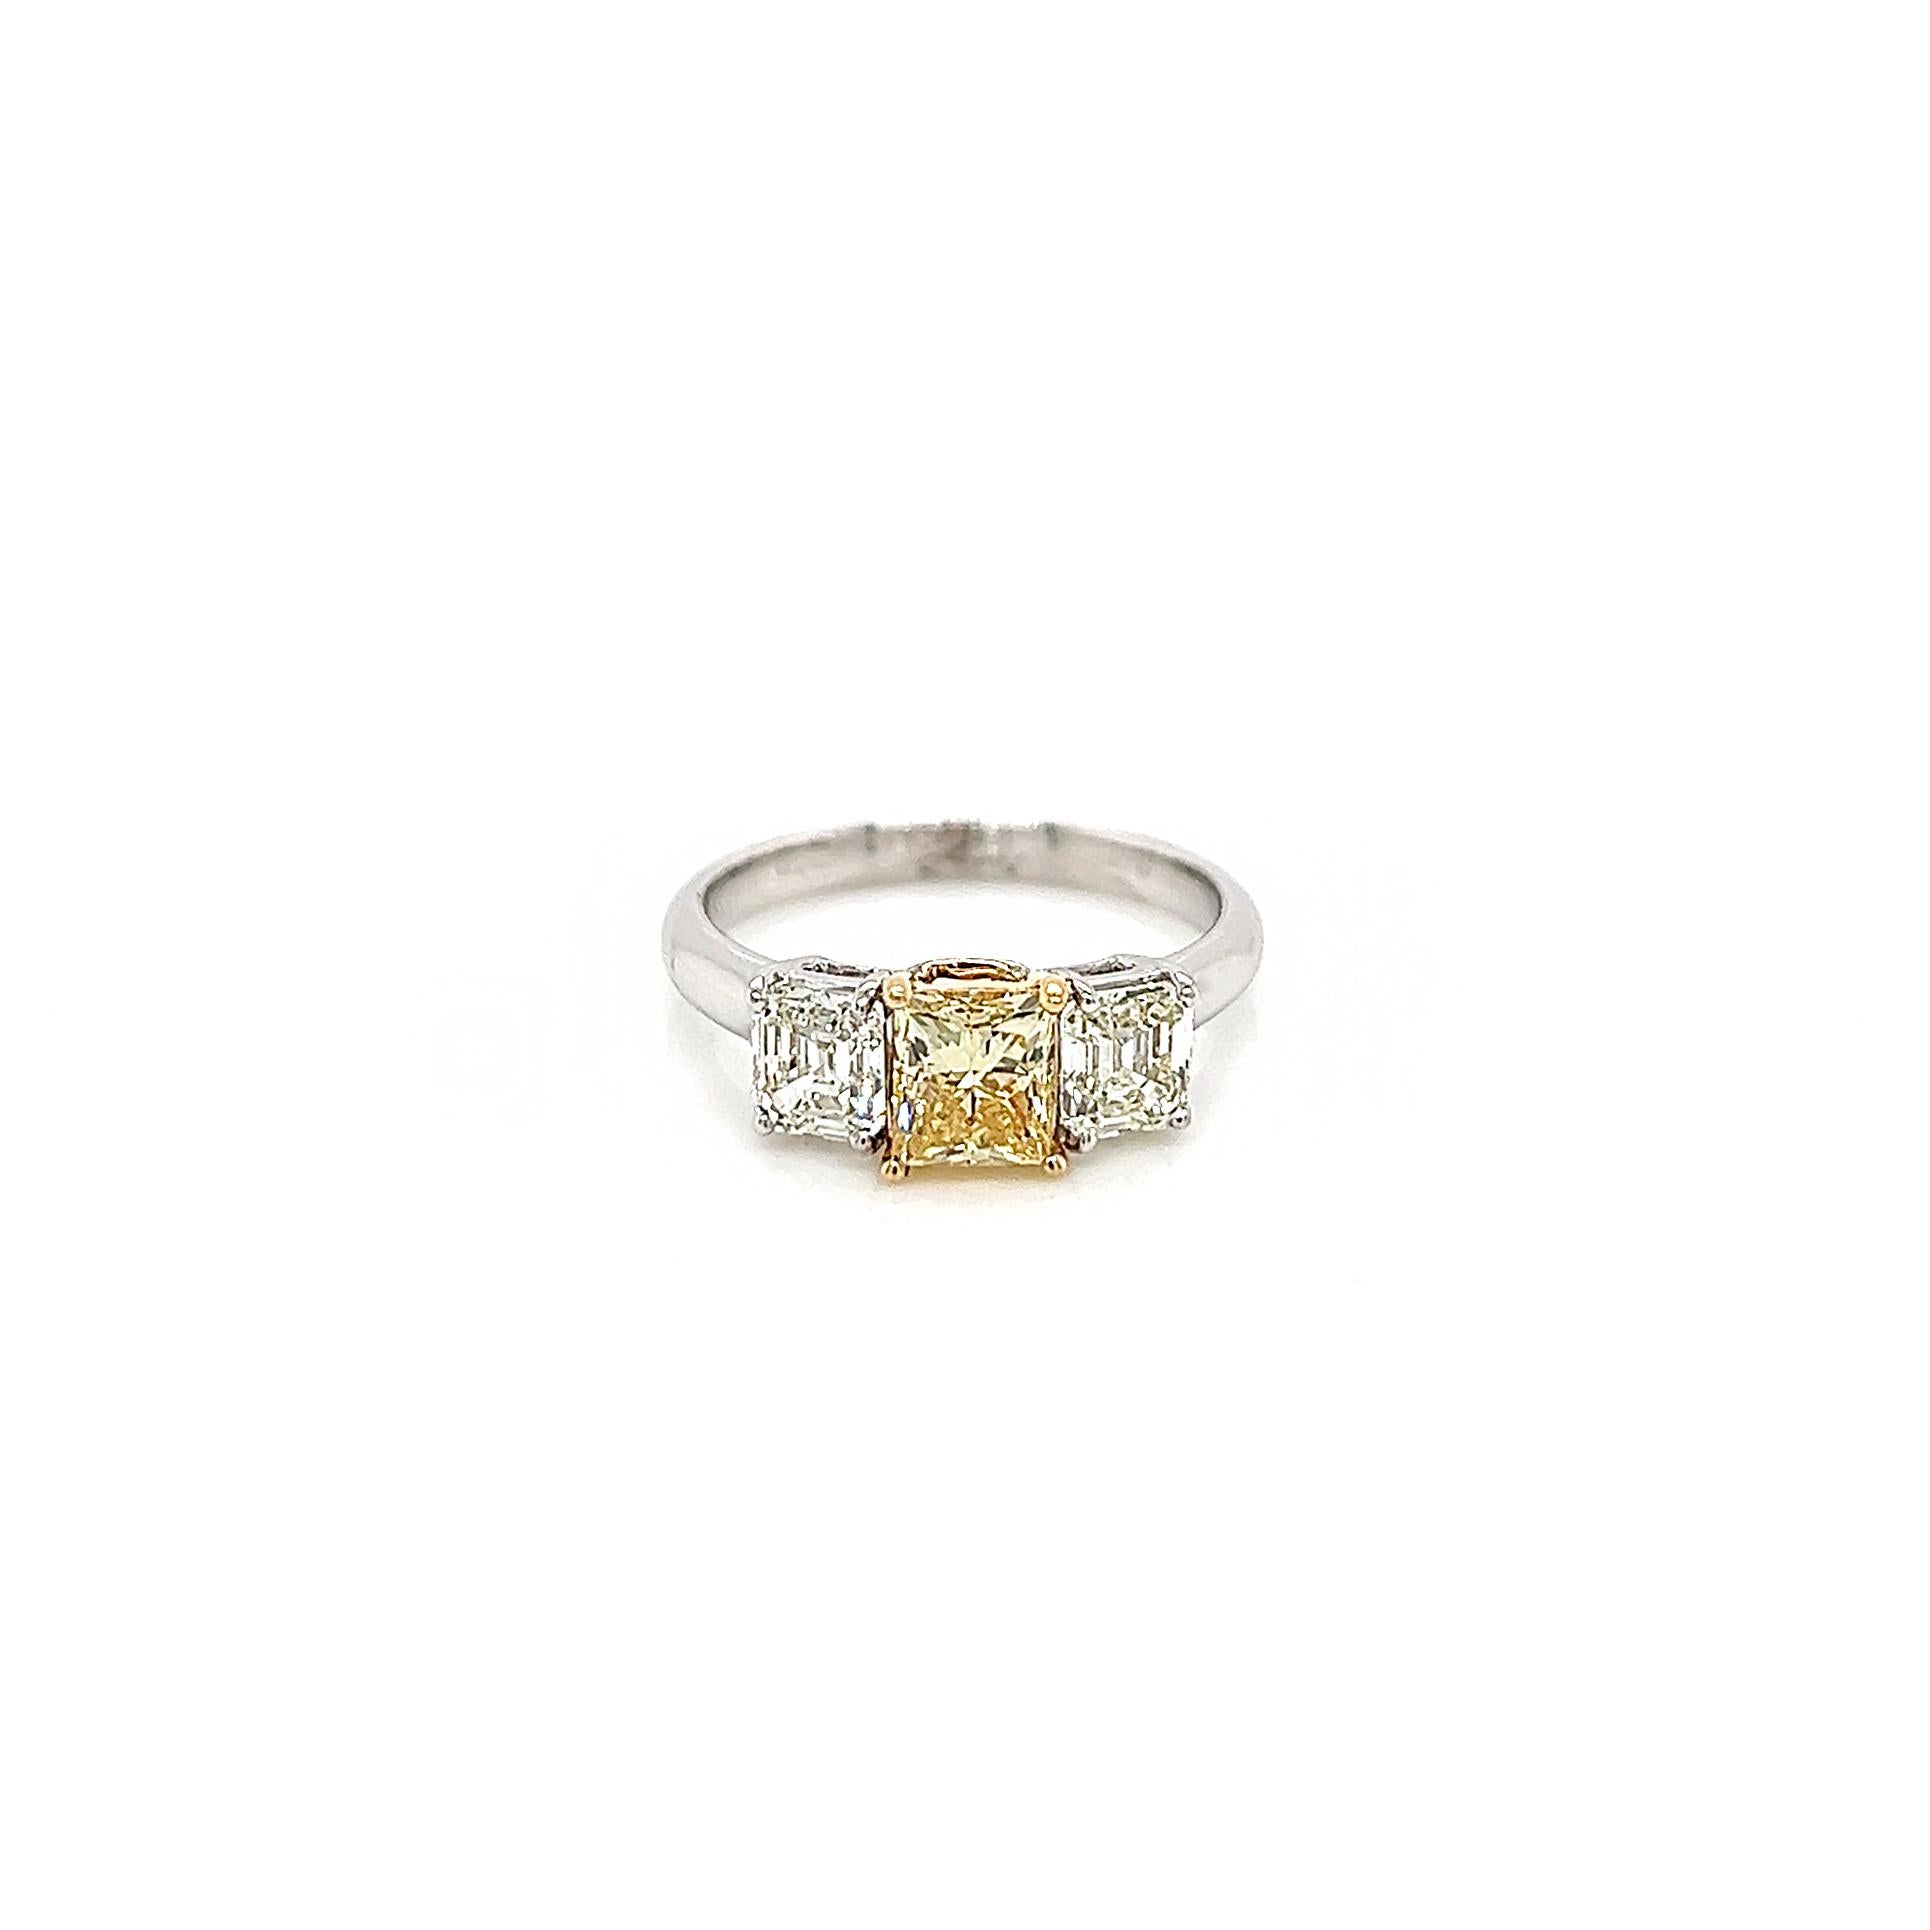 1.bague de fiançailles pour femme à trois pierres en diamant jaune fantaisie de 94 carats. Certifié par le GIA.

